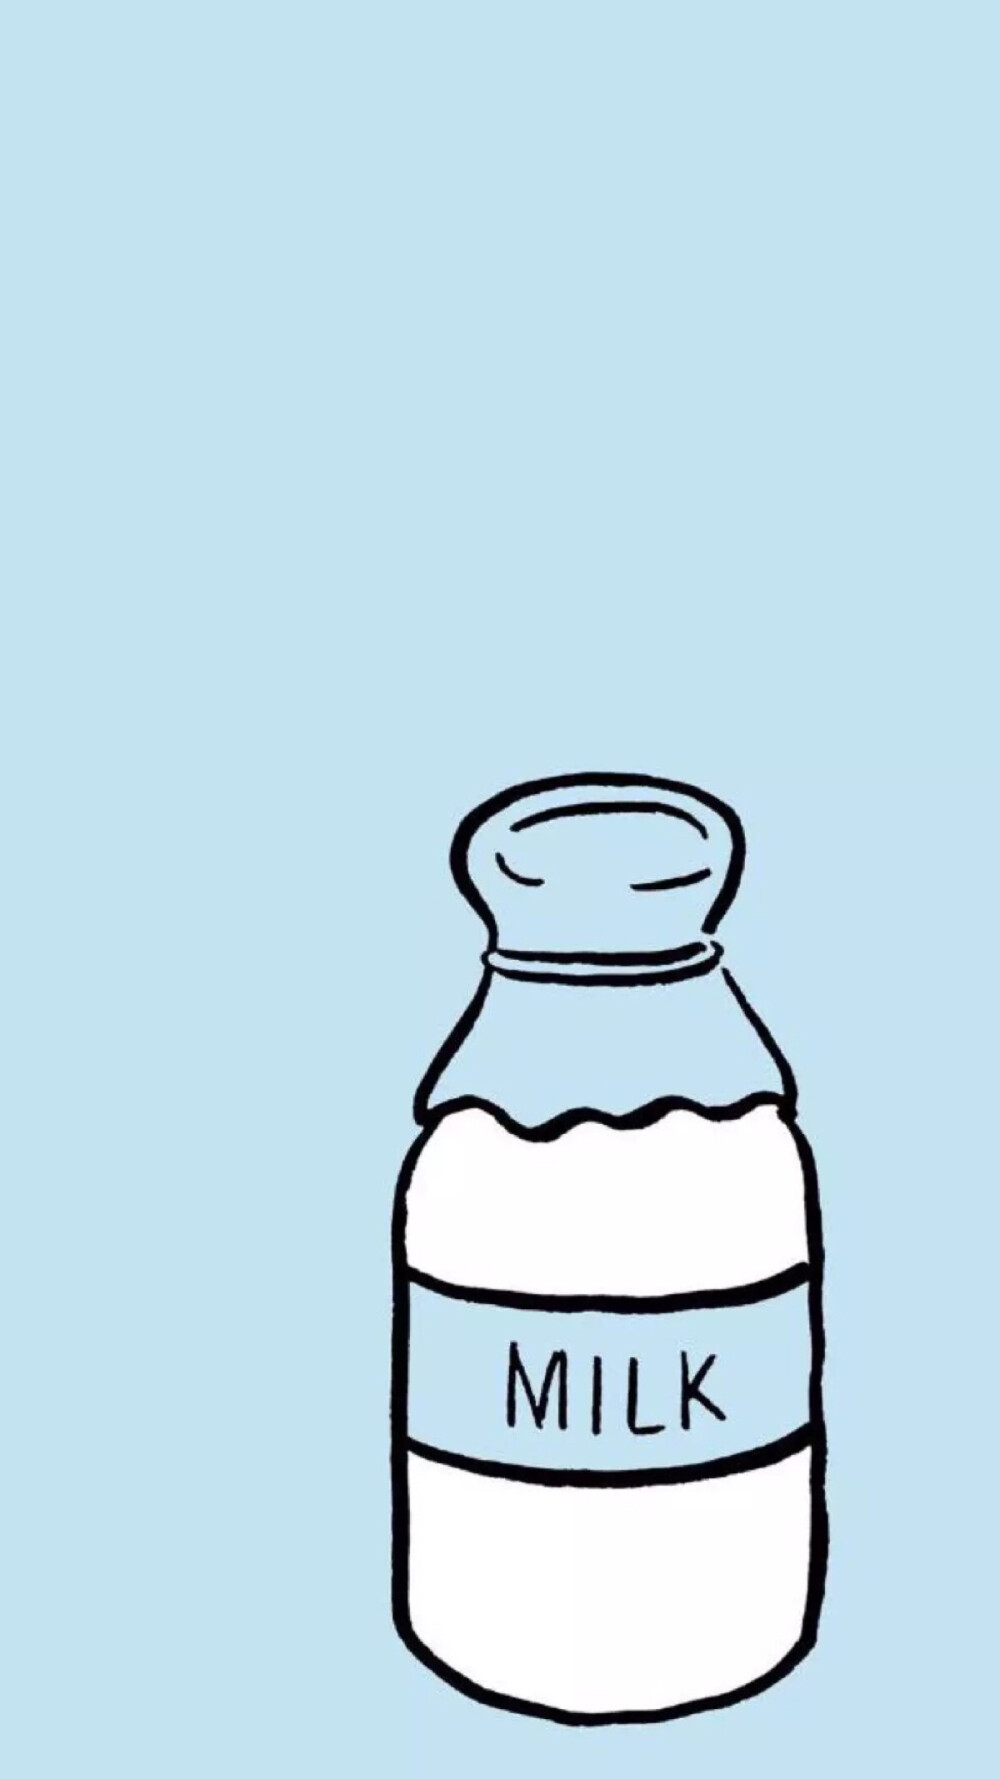 牛奶牛奶milk卡通壁纸锁屏头像ing